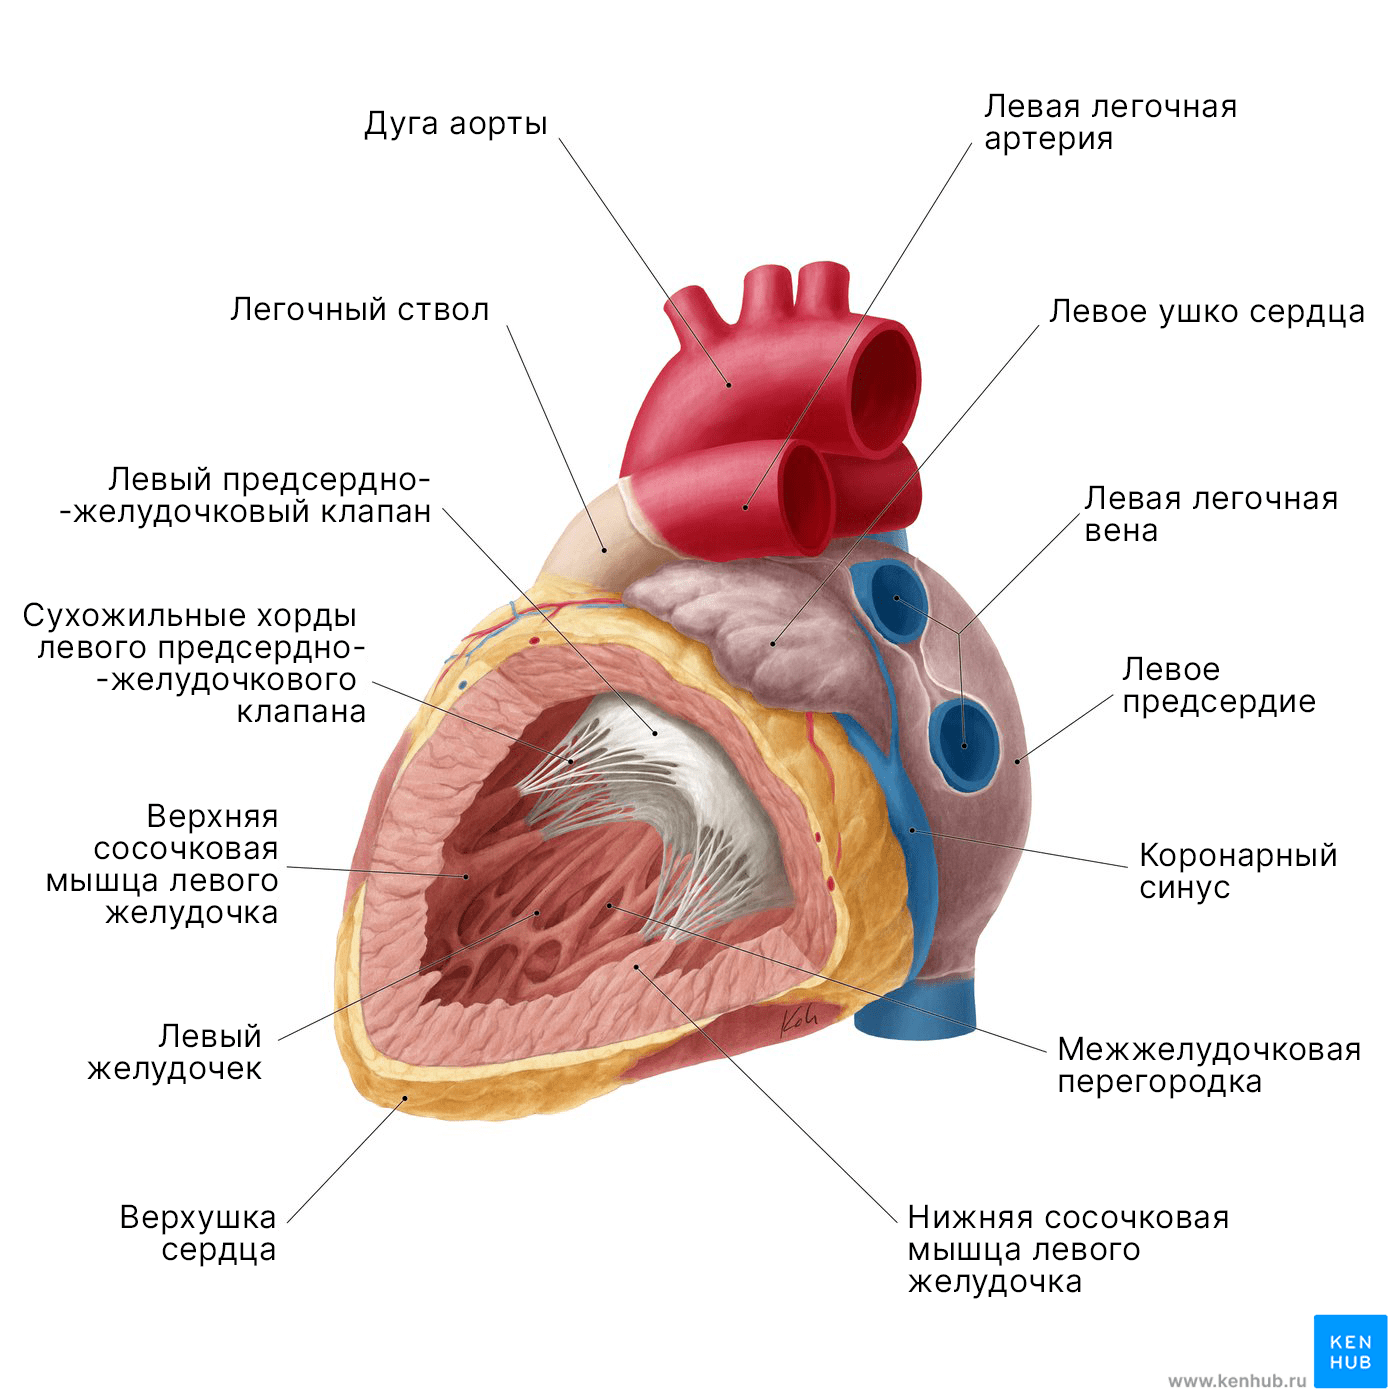 Левое предсердие и желудочек сердца